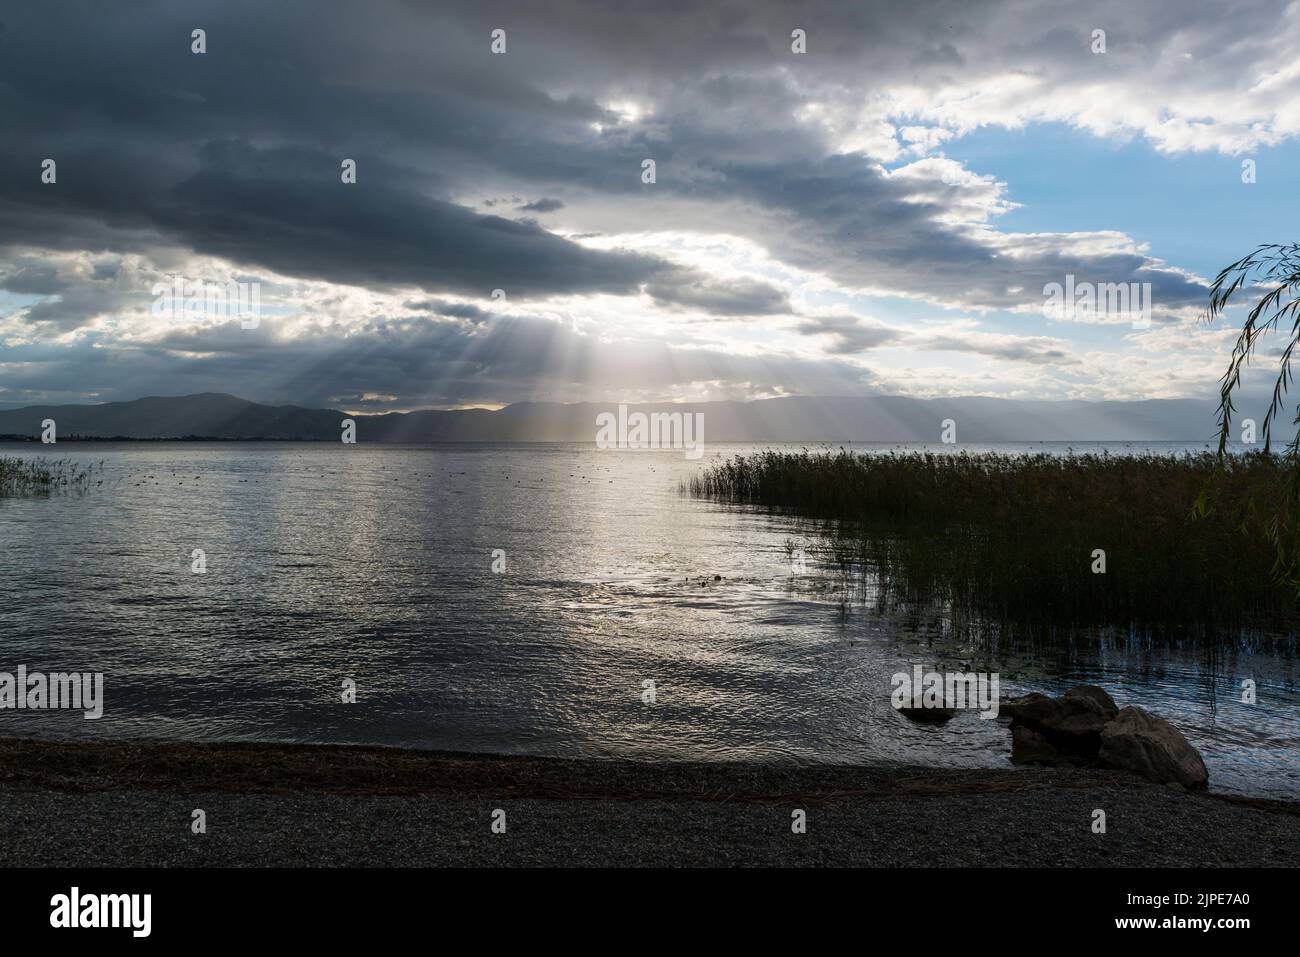 Soleil derrière les nuages au-dessus de la rive couverte de roseaux du lac Ohrid, Macédoine du Nord, Europe Banque D'Images